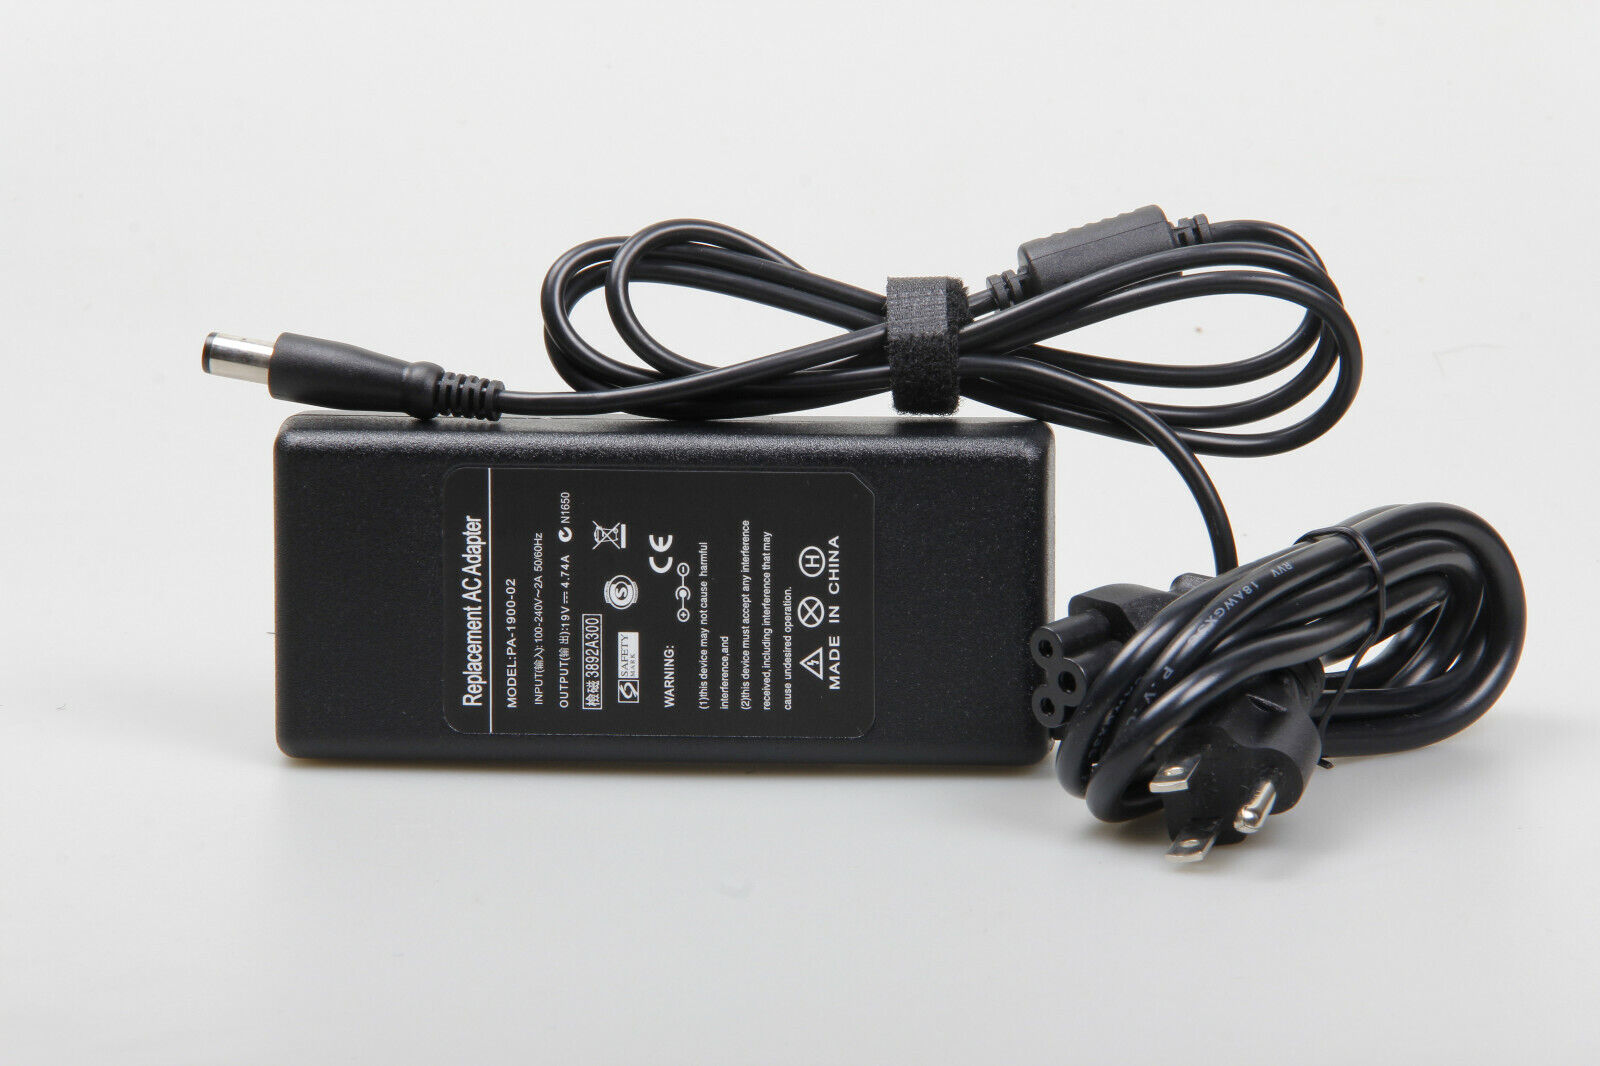 AC Power Adapter For HP 251-A111 251-A120 251-A121 251-A123W 251-A126 Desktop PC